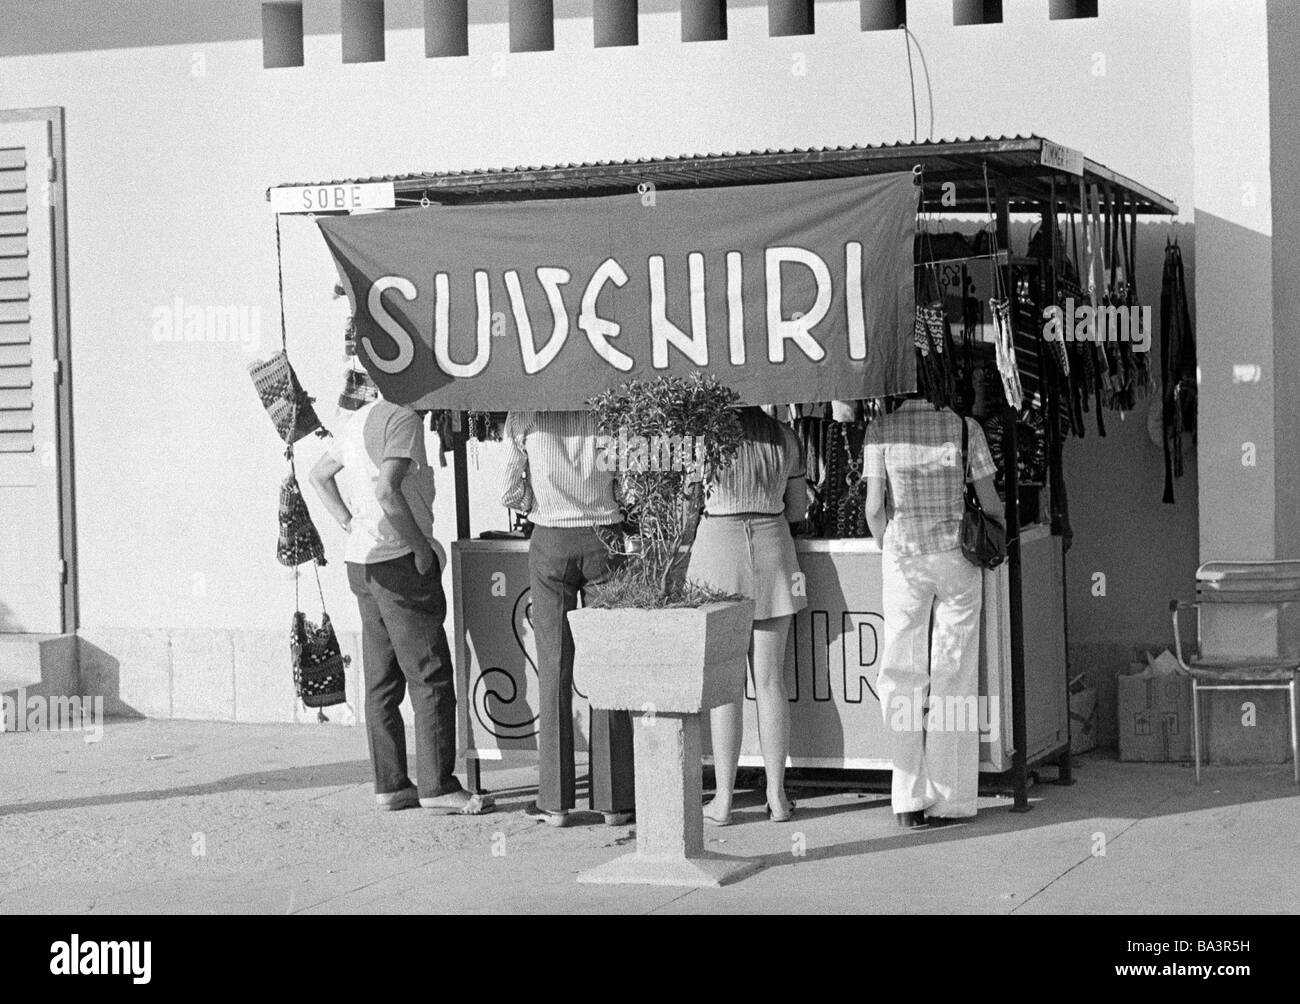 70er Jahre, schwarz / weiß Foto, Reisen, Tourismus, Touristen stehen in einem Souvenirshop, Suveniri, Monika, Kroatien, an, die Zeit, Jugoslawien, Jugoslawien Stockfoto